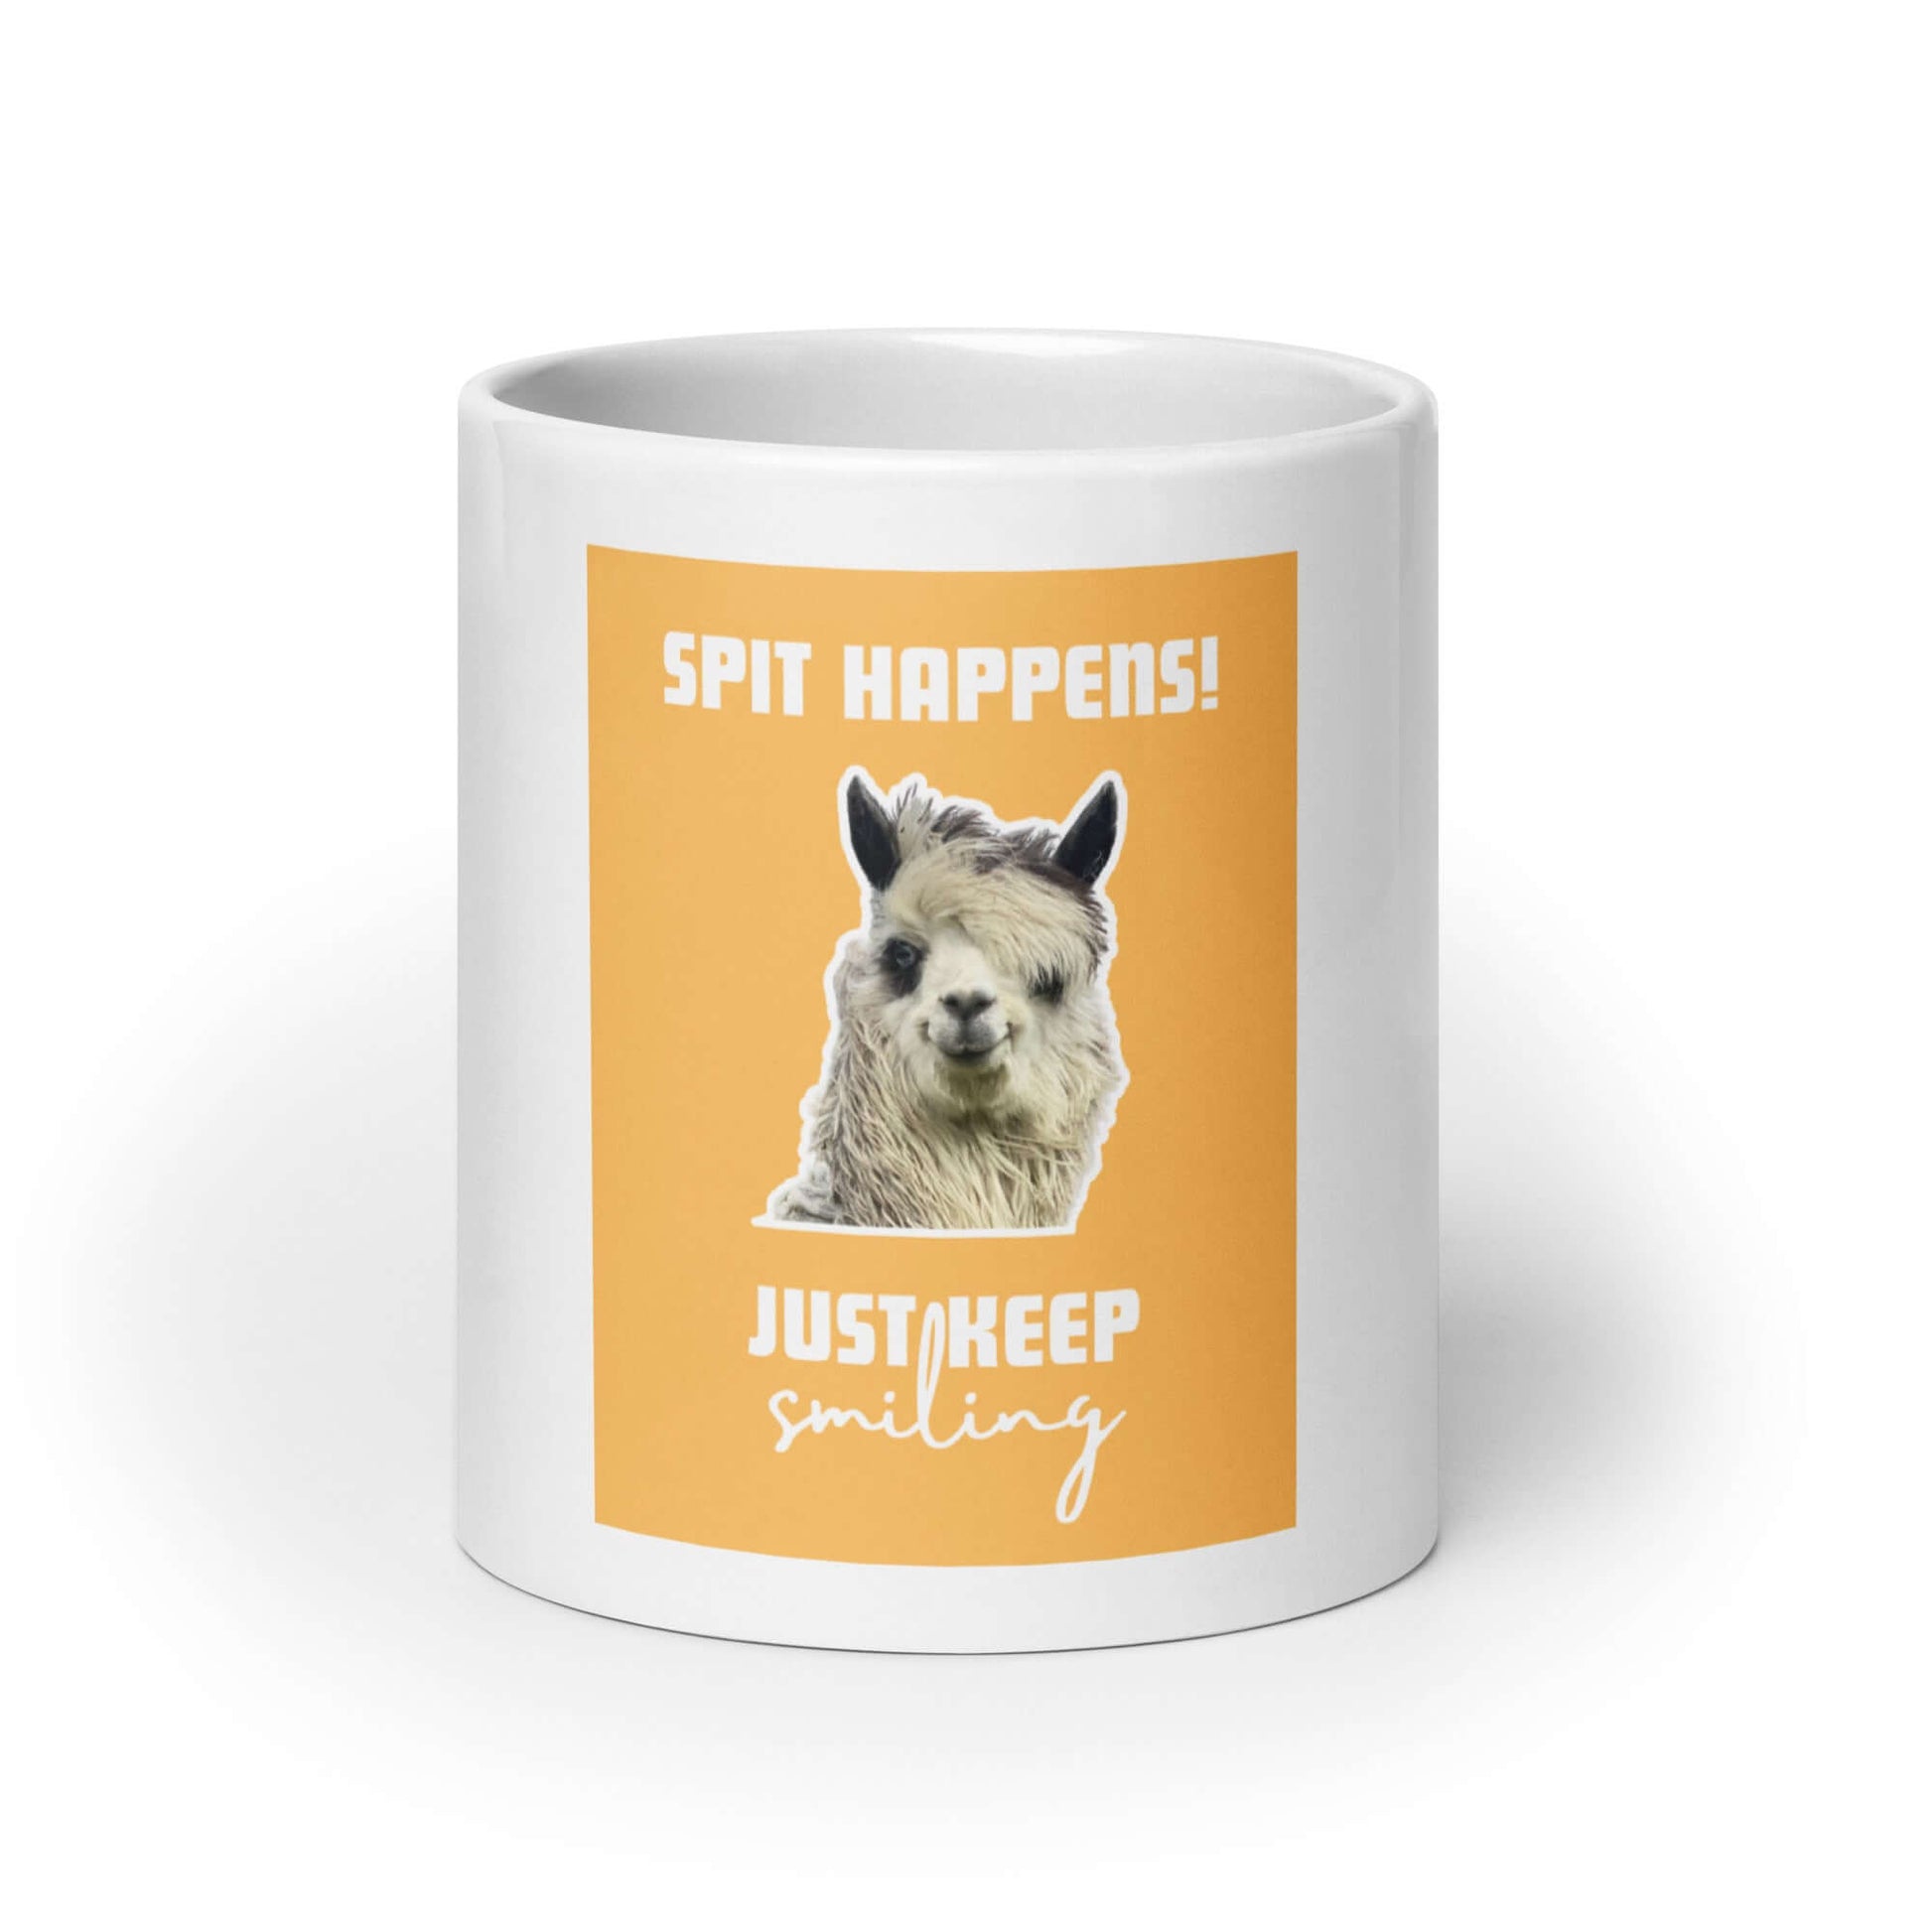 Alpaka-Design Tasse 'Spit happens! Just keep smiling' - Alpaka Produkte online kaufen und dabei Gutes tun!